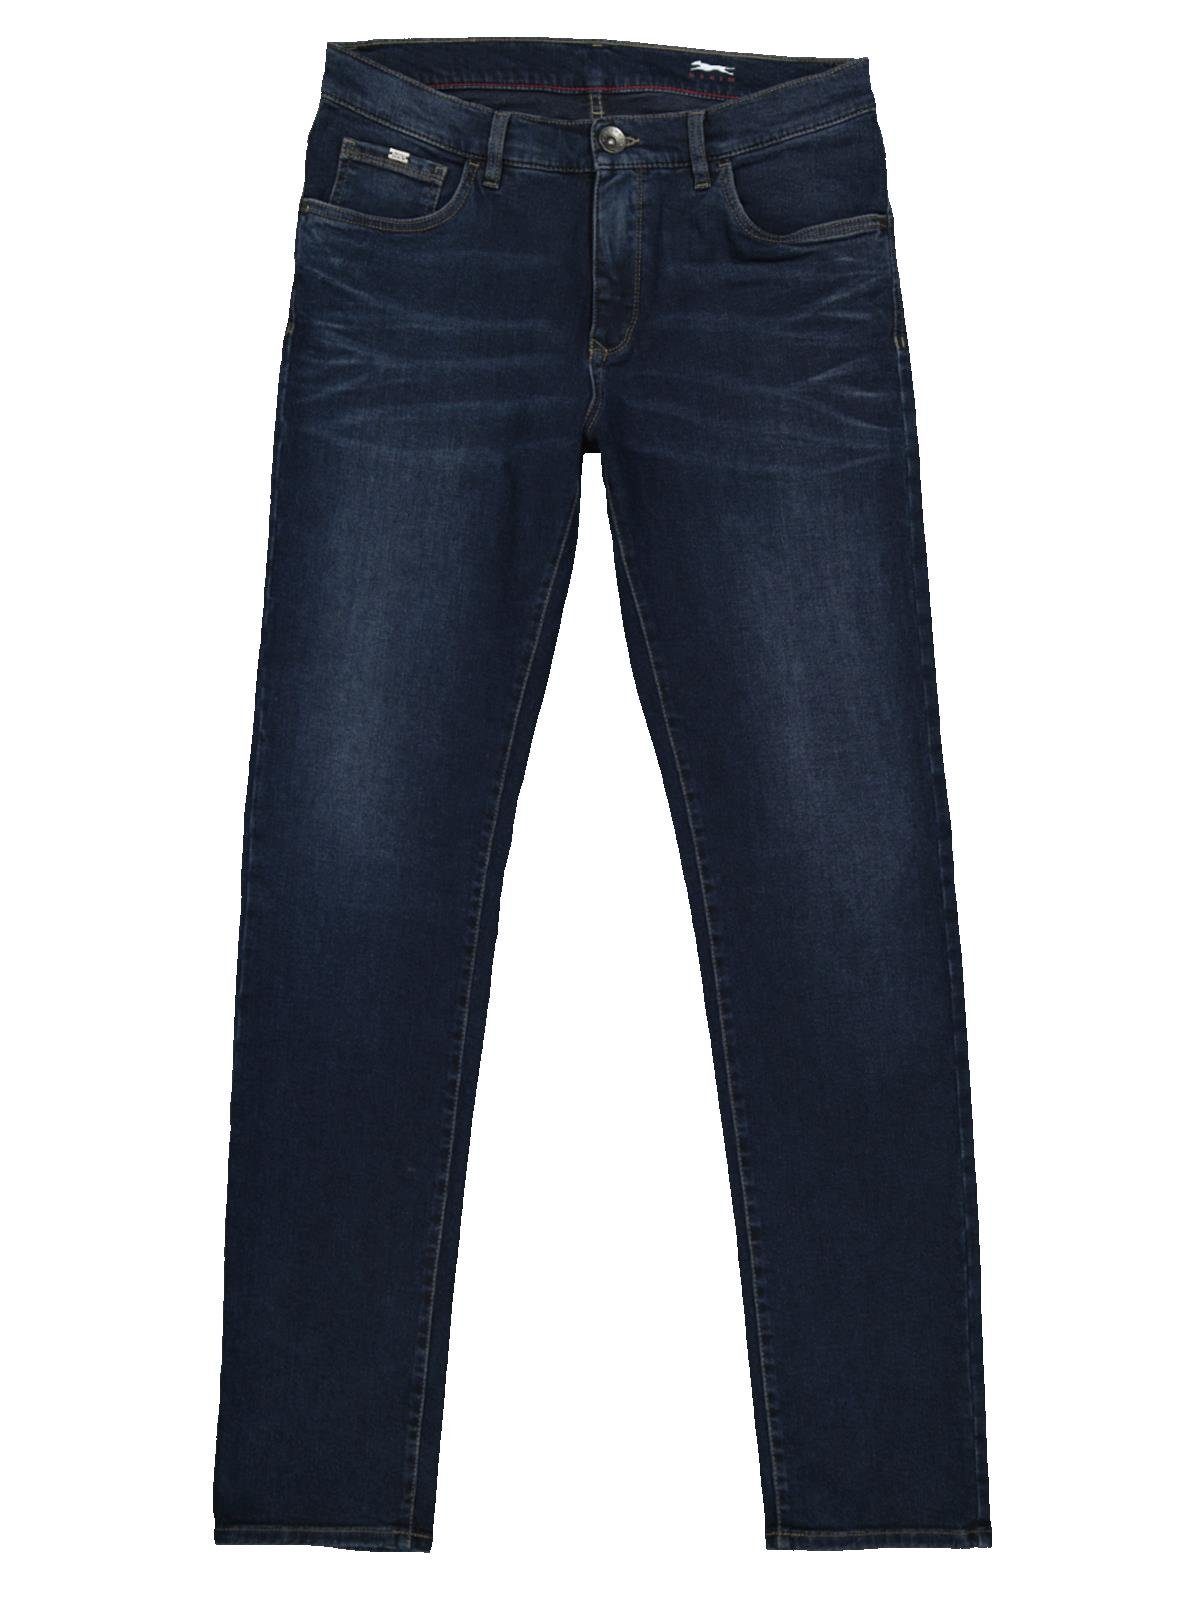 Engbers Stretch-Jeans fit Super-Stretch-Jeans slim